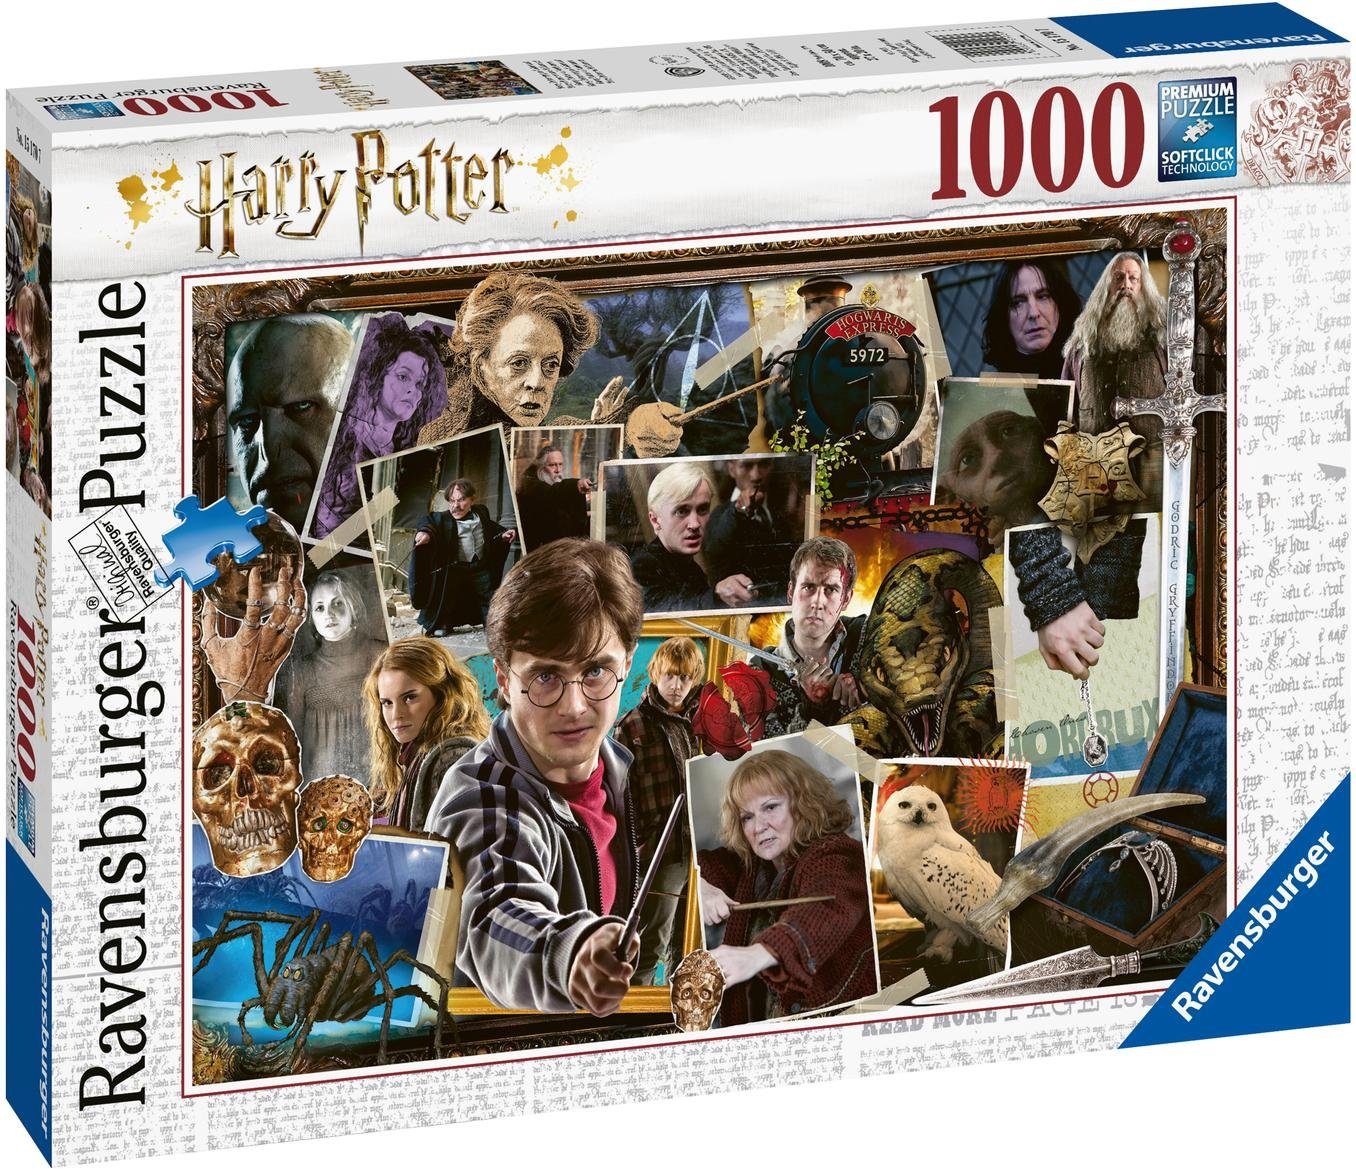 Germany, Ravensburger - Made weltweit Voldemort, schützt 1000 FSC® in gegen - Wald Potter Puzzleteile, Puzzle Harry